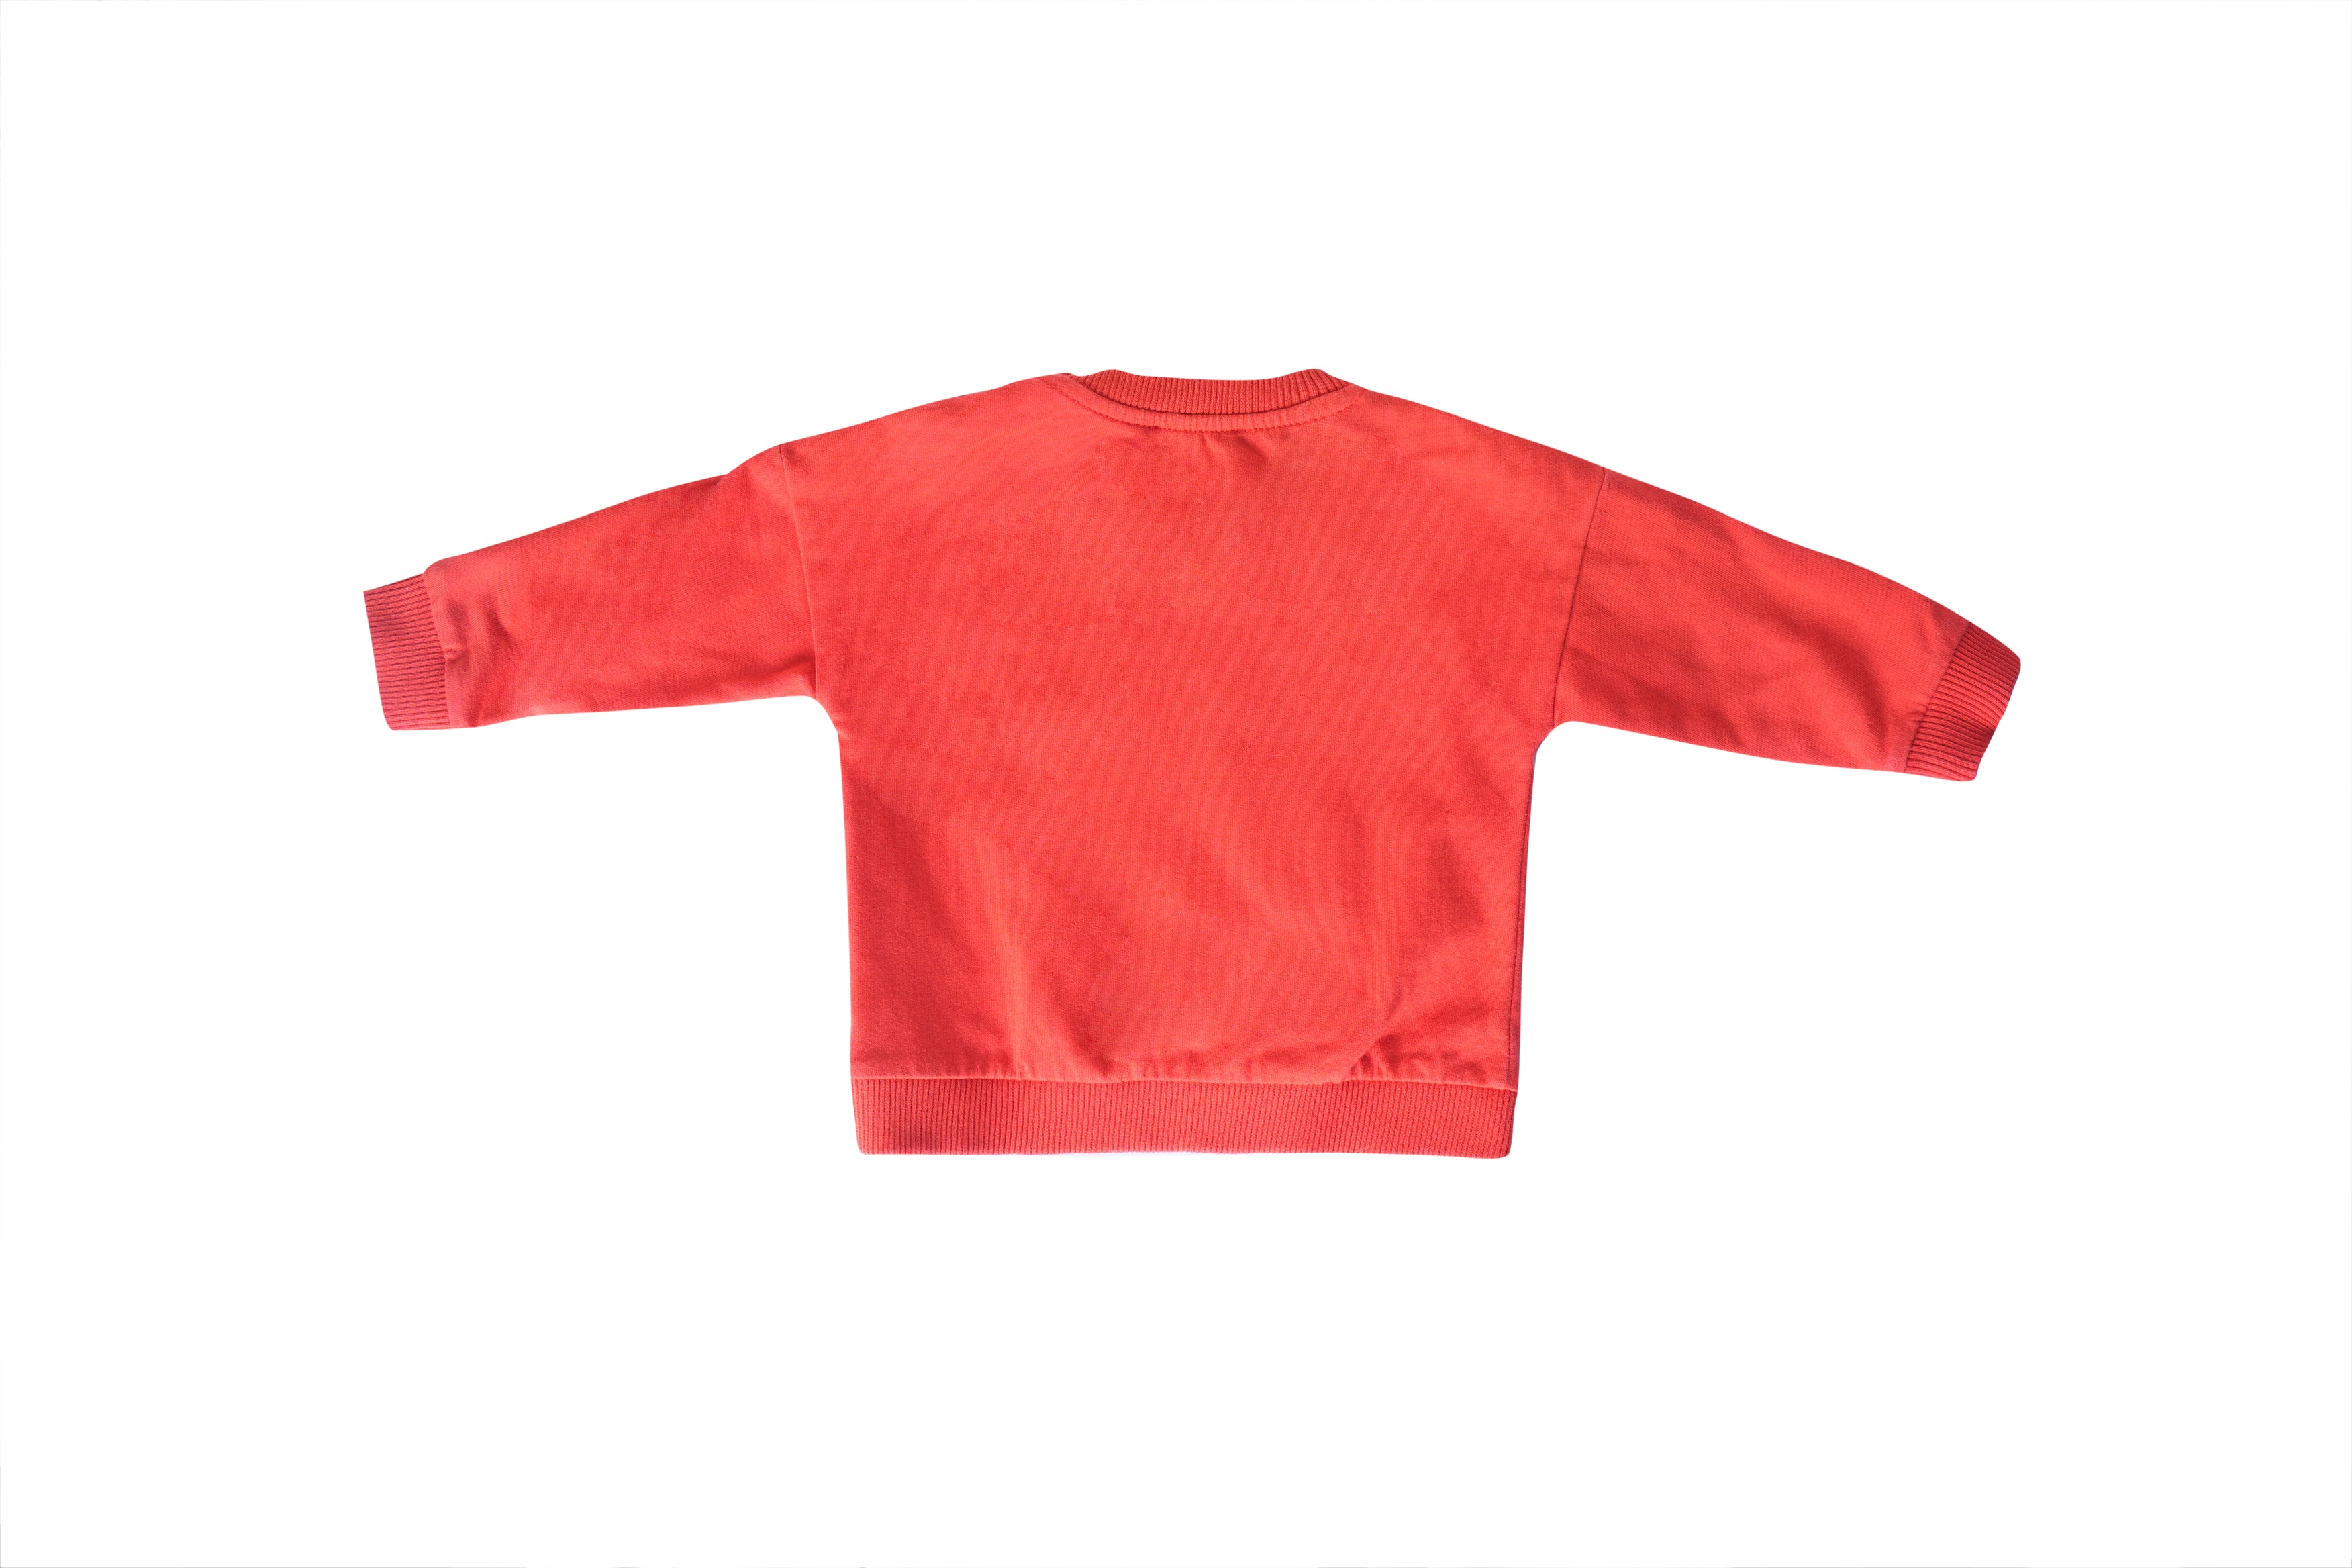 Moschino Red Sweatshirt